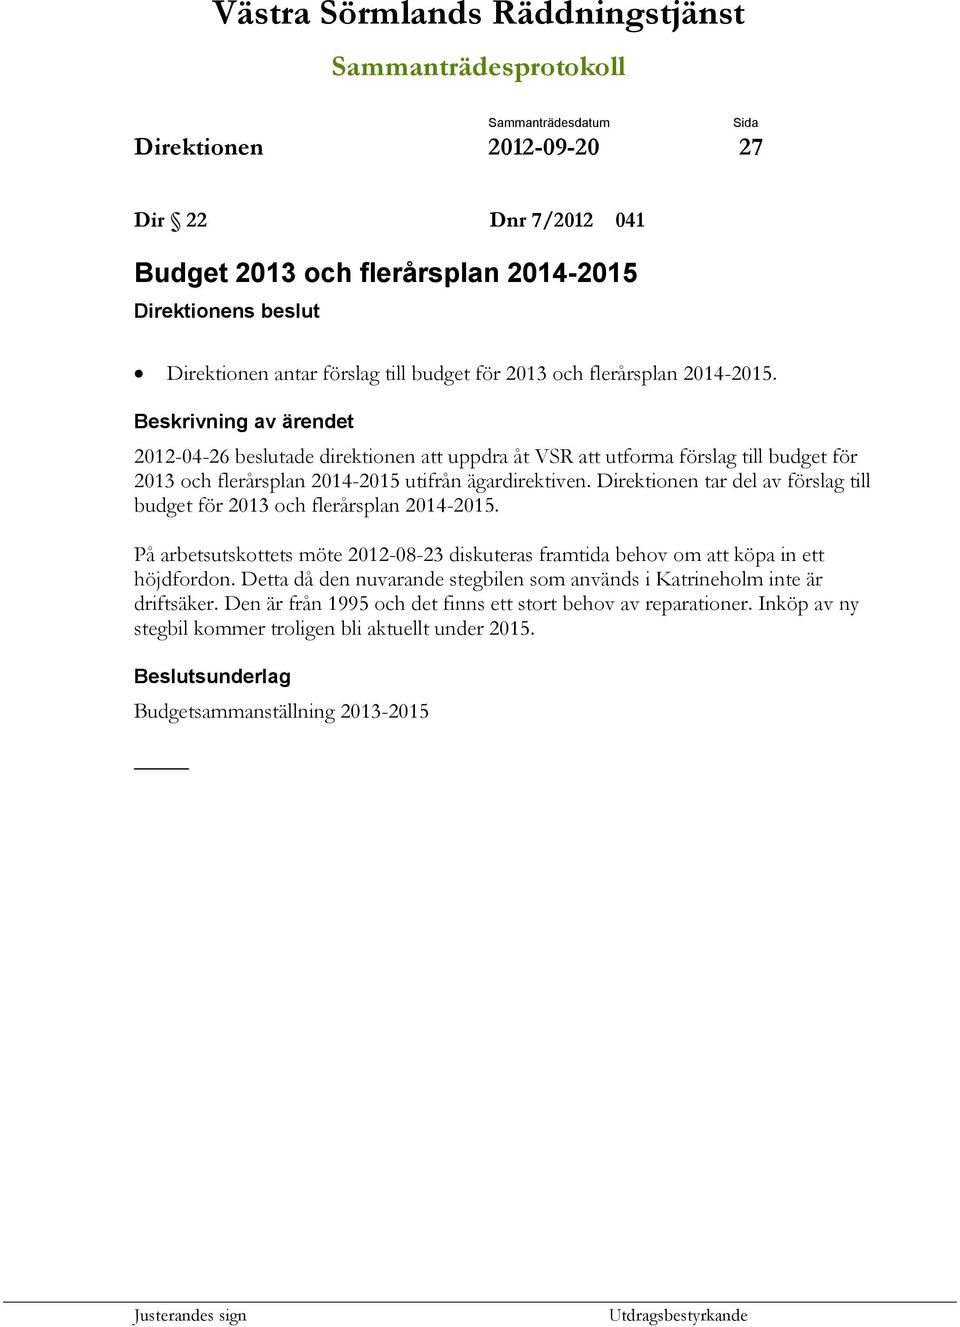 Direktionen tar del av förslag till budget för 2013 och flerårsplan 2014-2015. På arbetsutskottets möte 2012-08-23 diskuteras framtida behov om att köpa in ett höjdfordon.